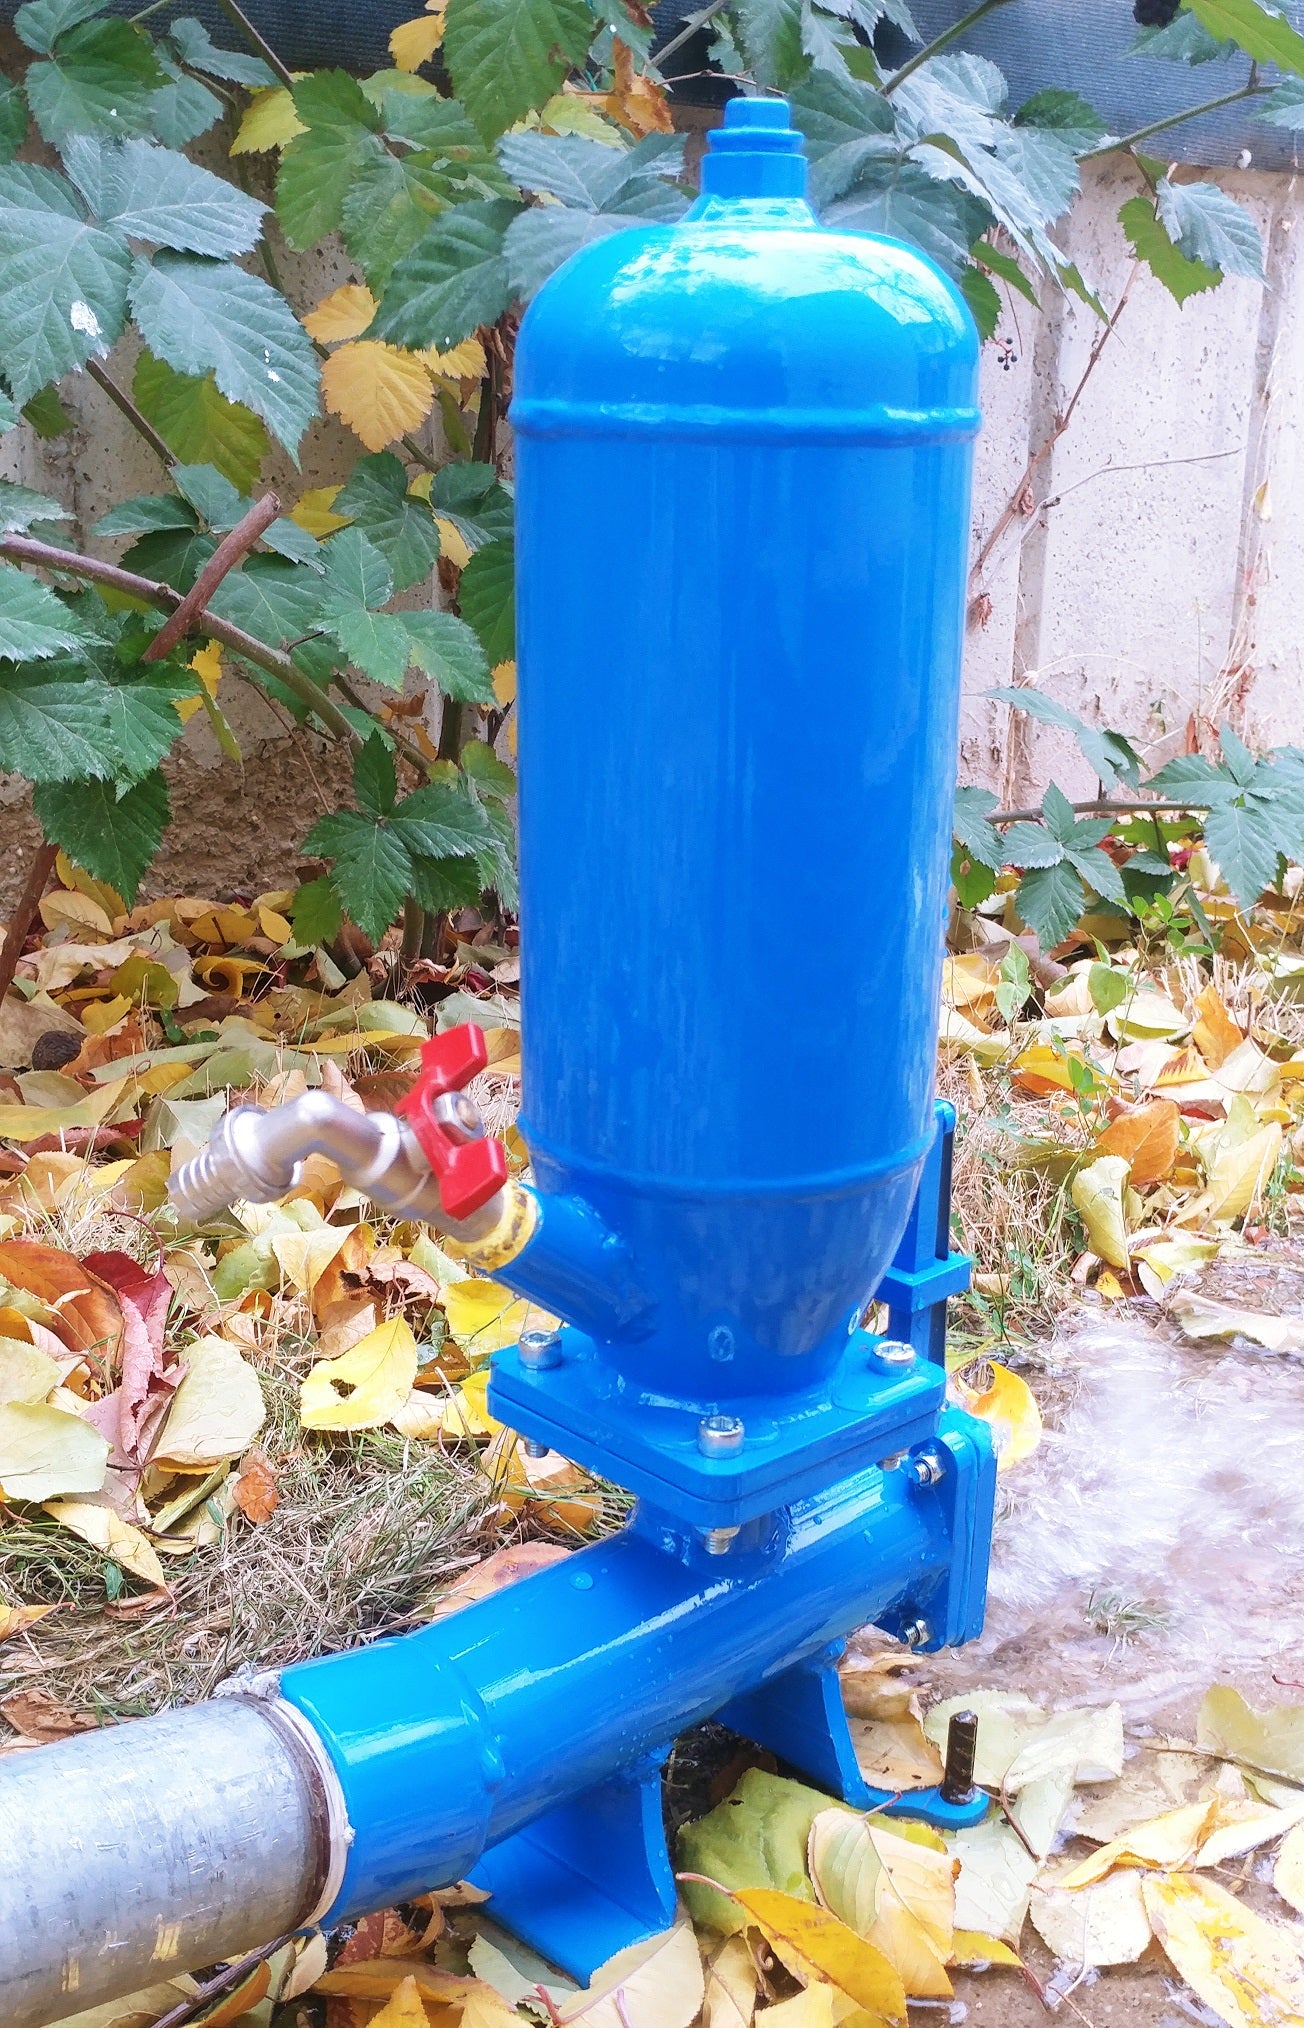 Klassische Hydraulischer Widder Pumpe Robust aus Stahl Pumpen ohne Energiekosten